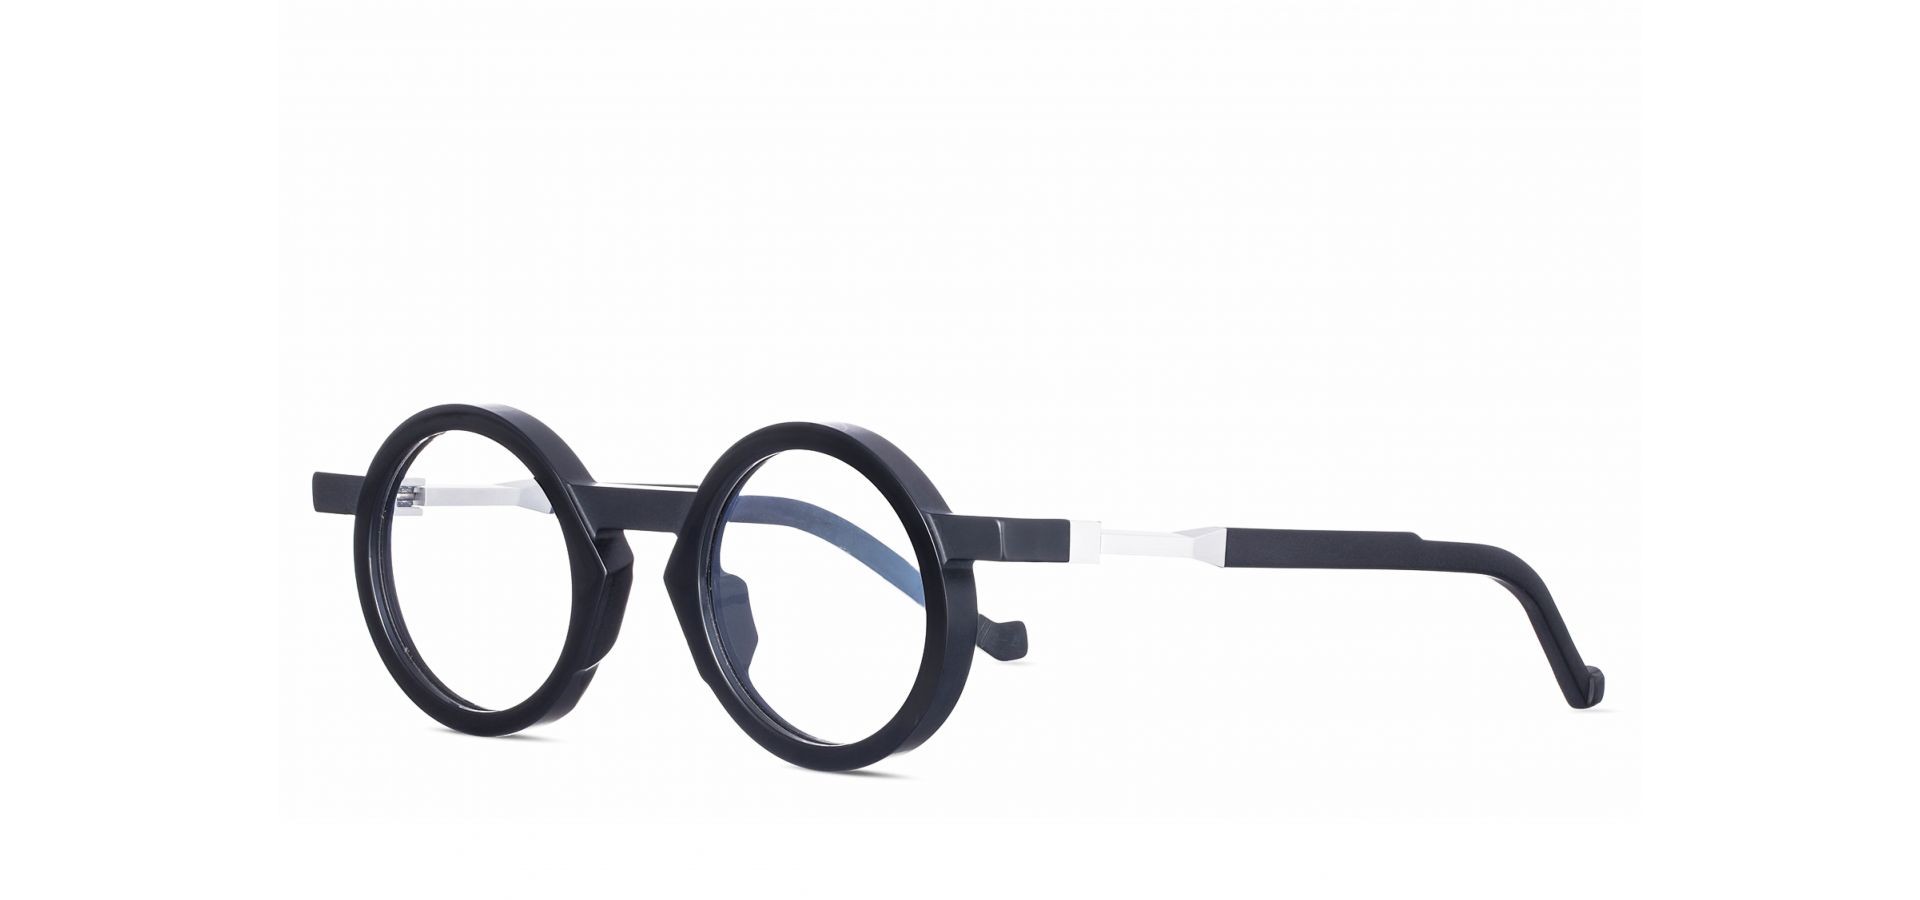 Korekcijska očala VAVA WL0039 BLACK: Velikost: 45/25/140, Spol: unisex, Material: acetat/kovinska